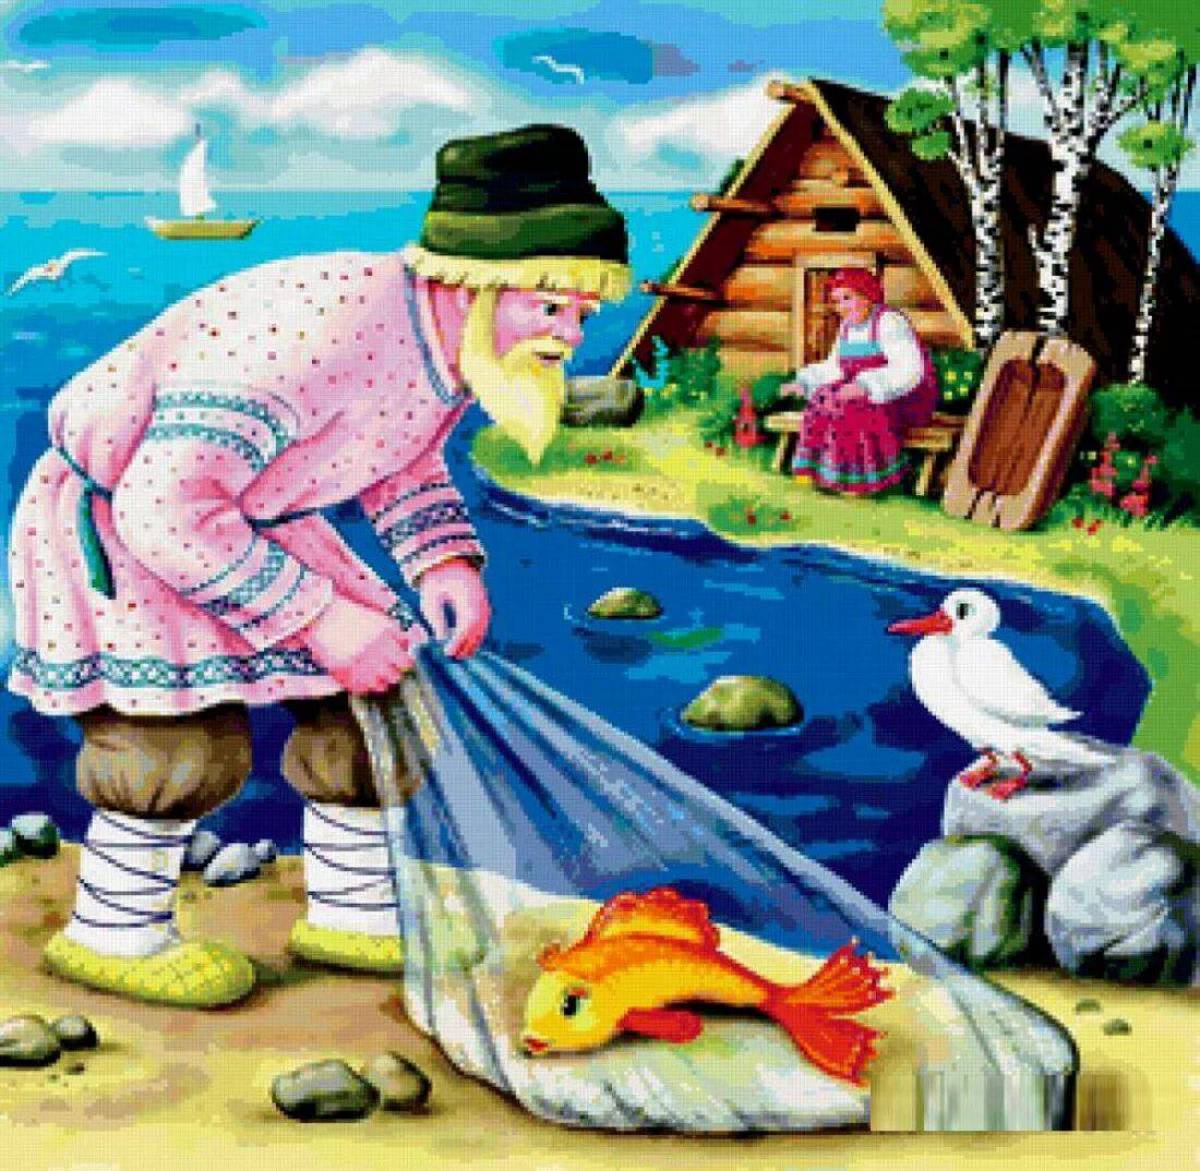 Иллюстрация к сказке о рыбаке и рыбке #19